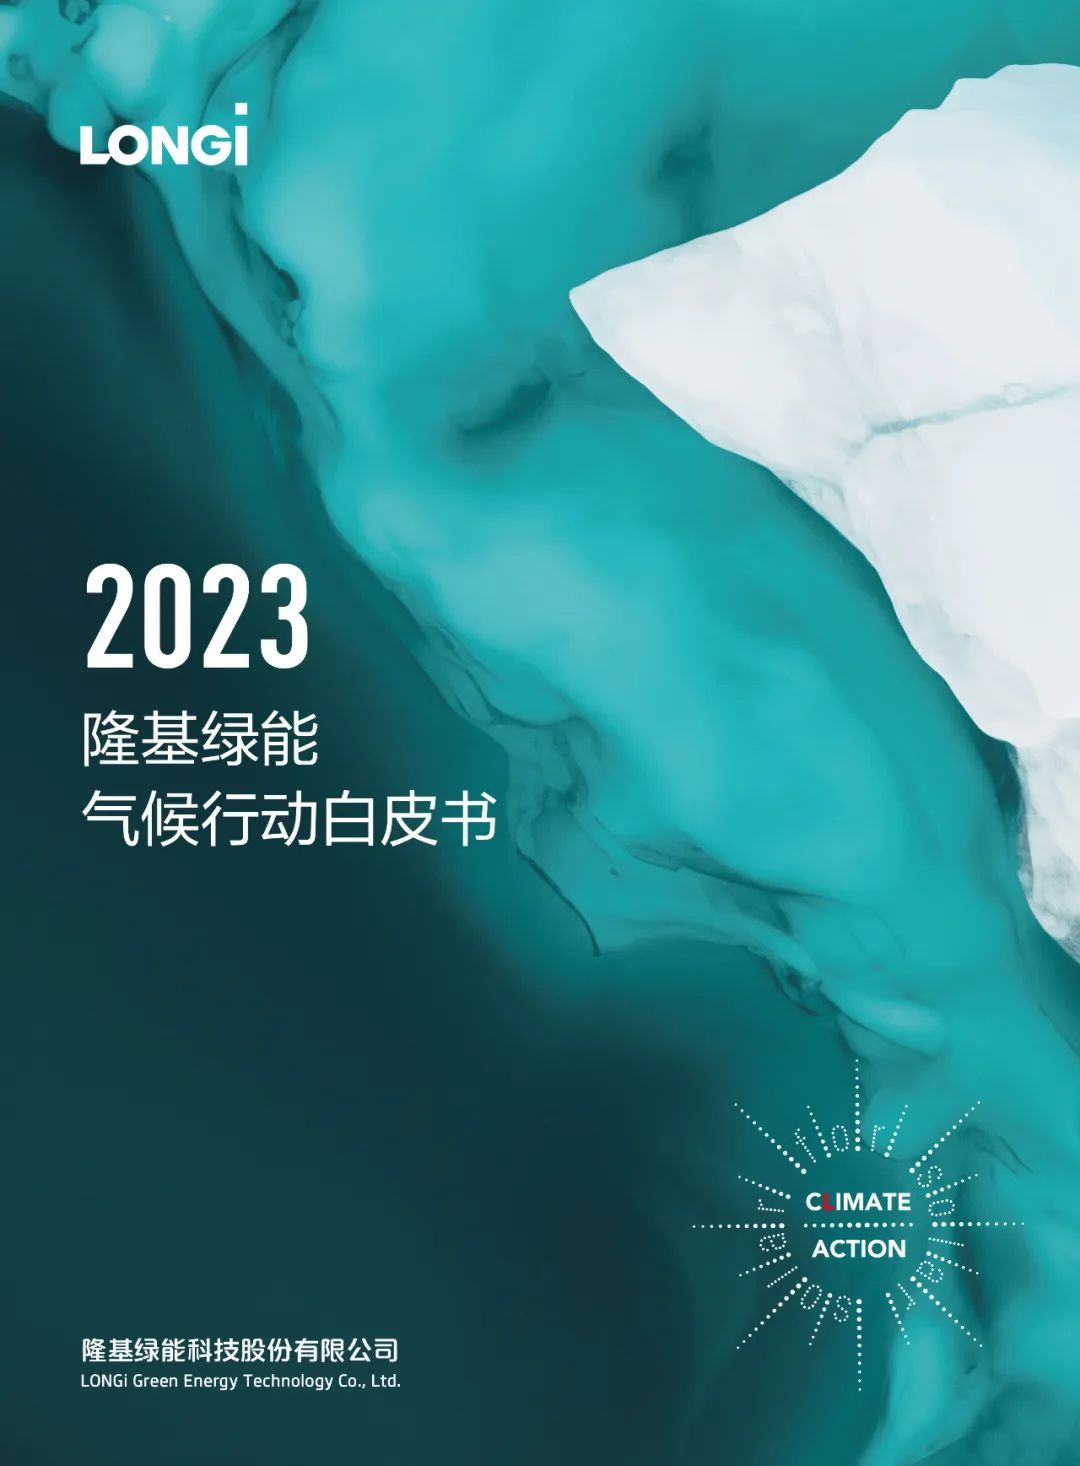 《2023隆基绿能气候行动白皮书》选取了冰川融化作为封面，预示气候变化、气温升高带来的冰川融化、海平面上升等后果